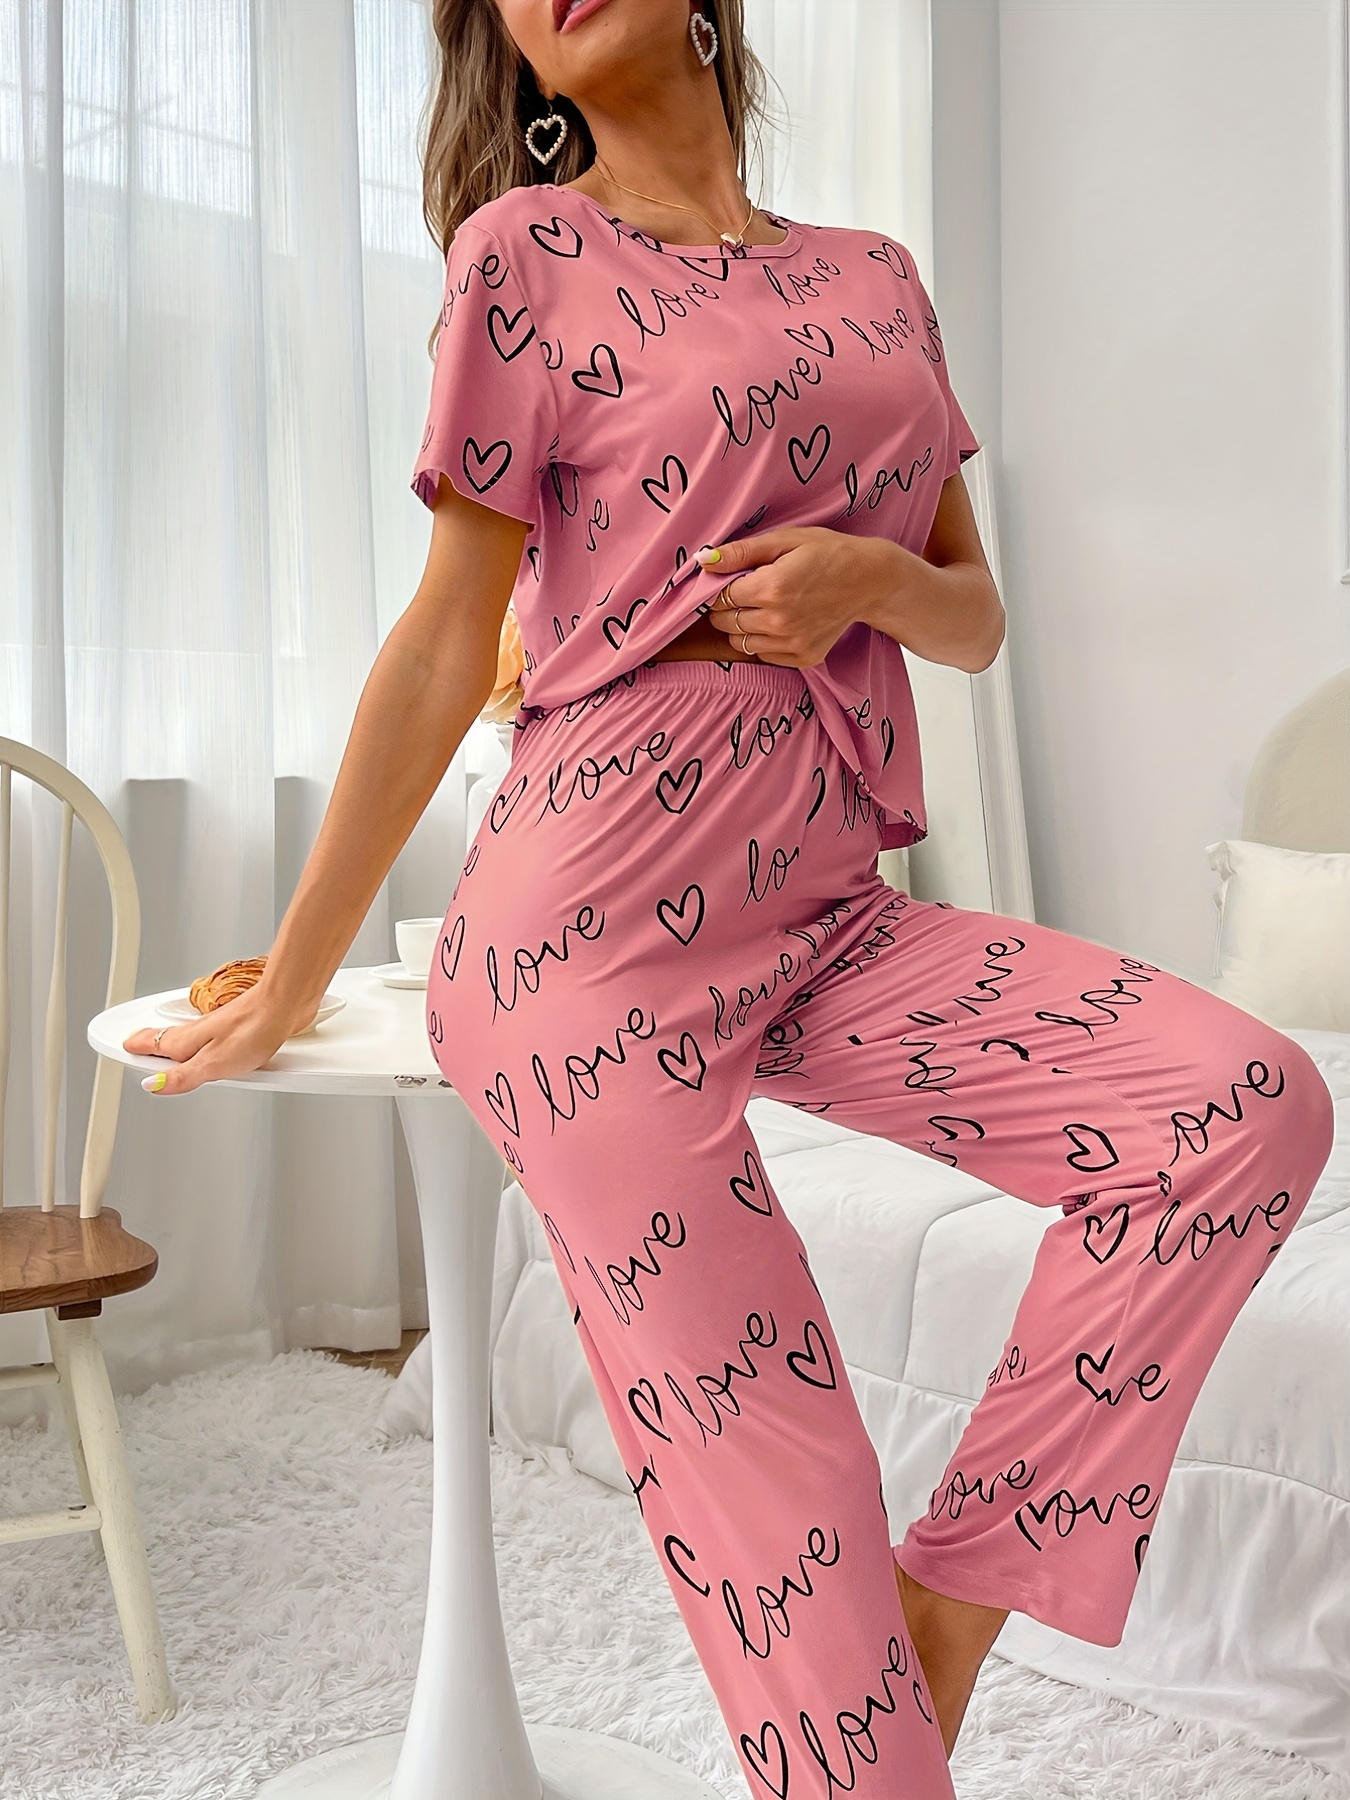 Girls Silk Pajamas Are Best Cotton Pajama Pants Womens Gifts - Silk Pajamas,  Cotton Sleepwear & Loungewear at